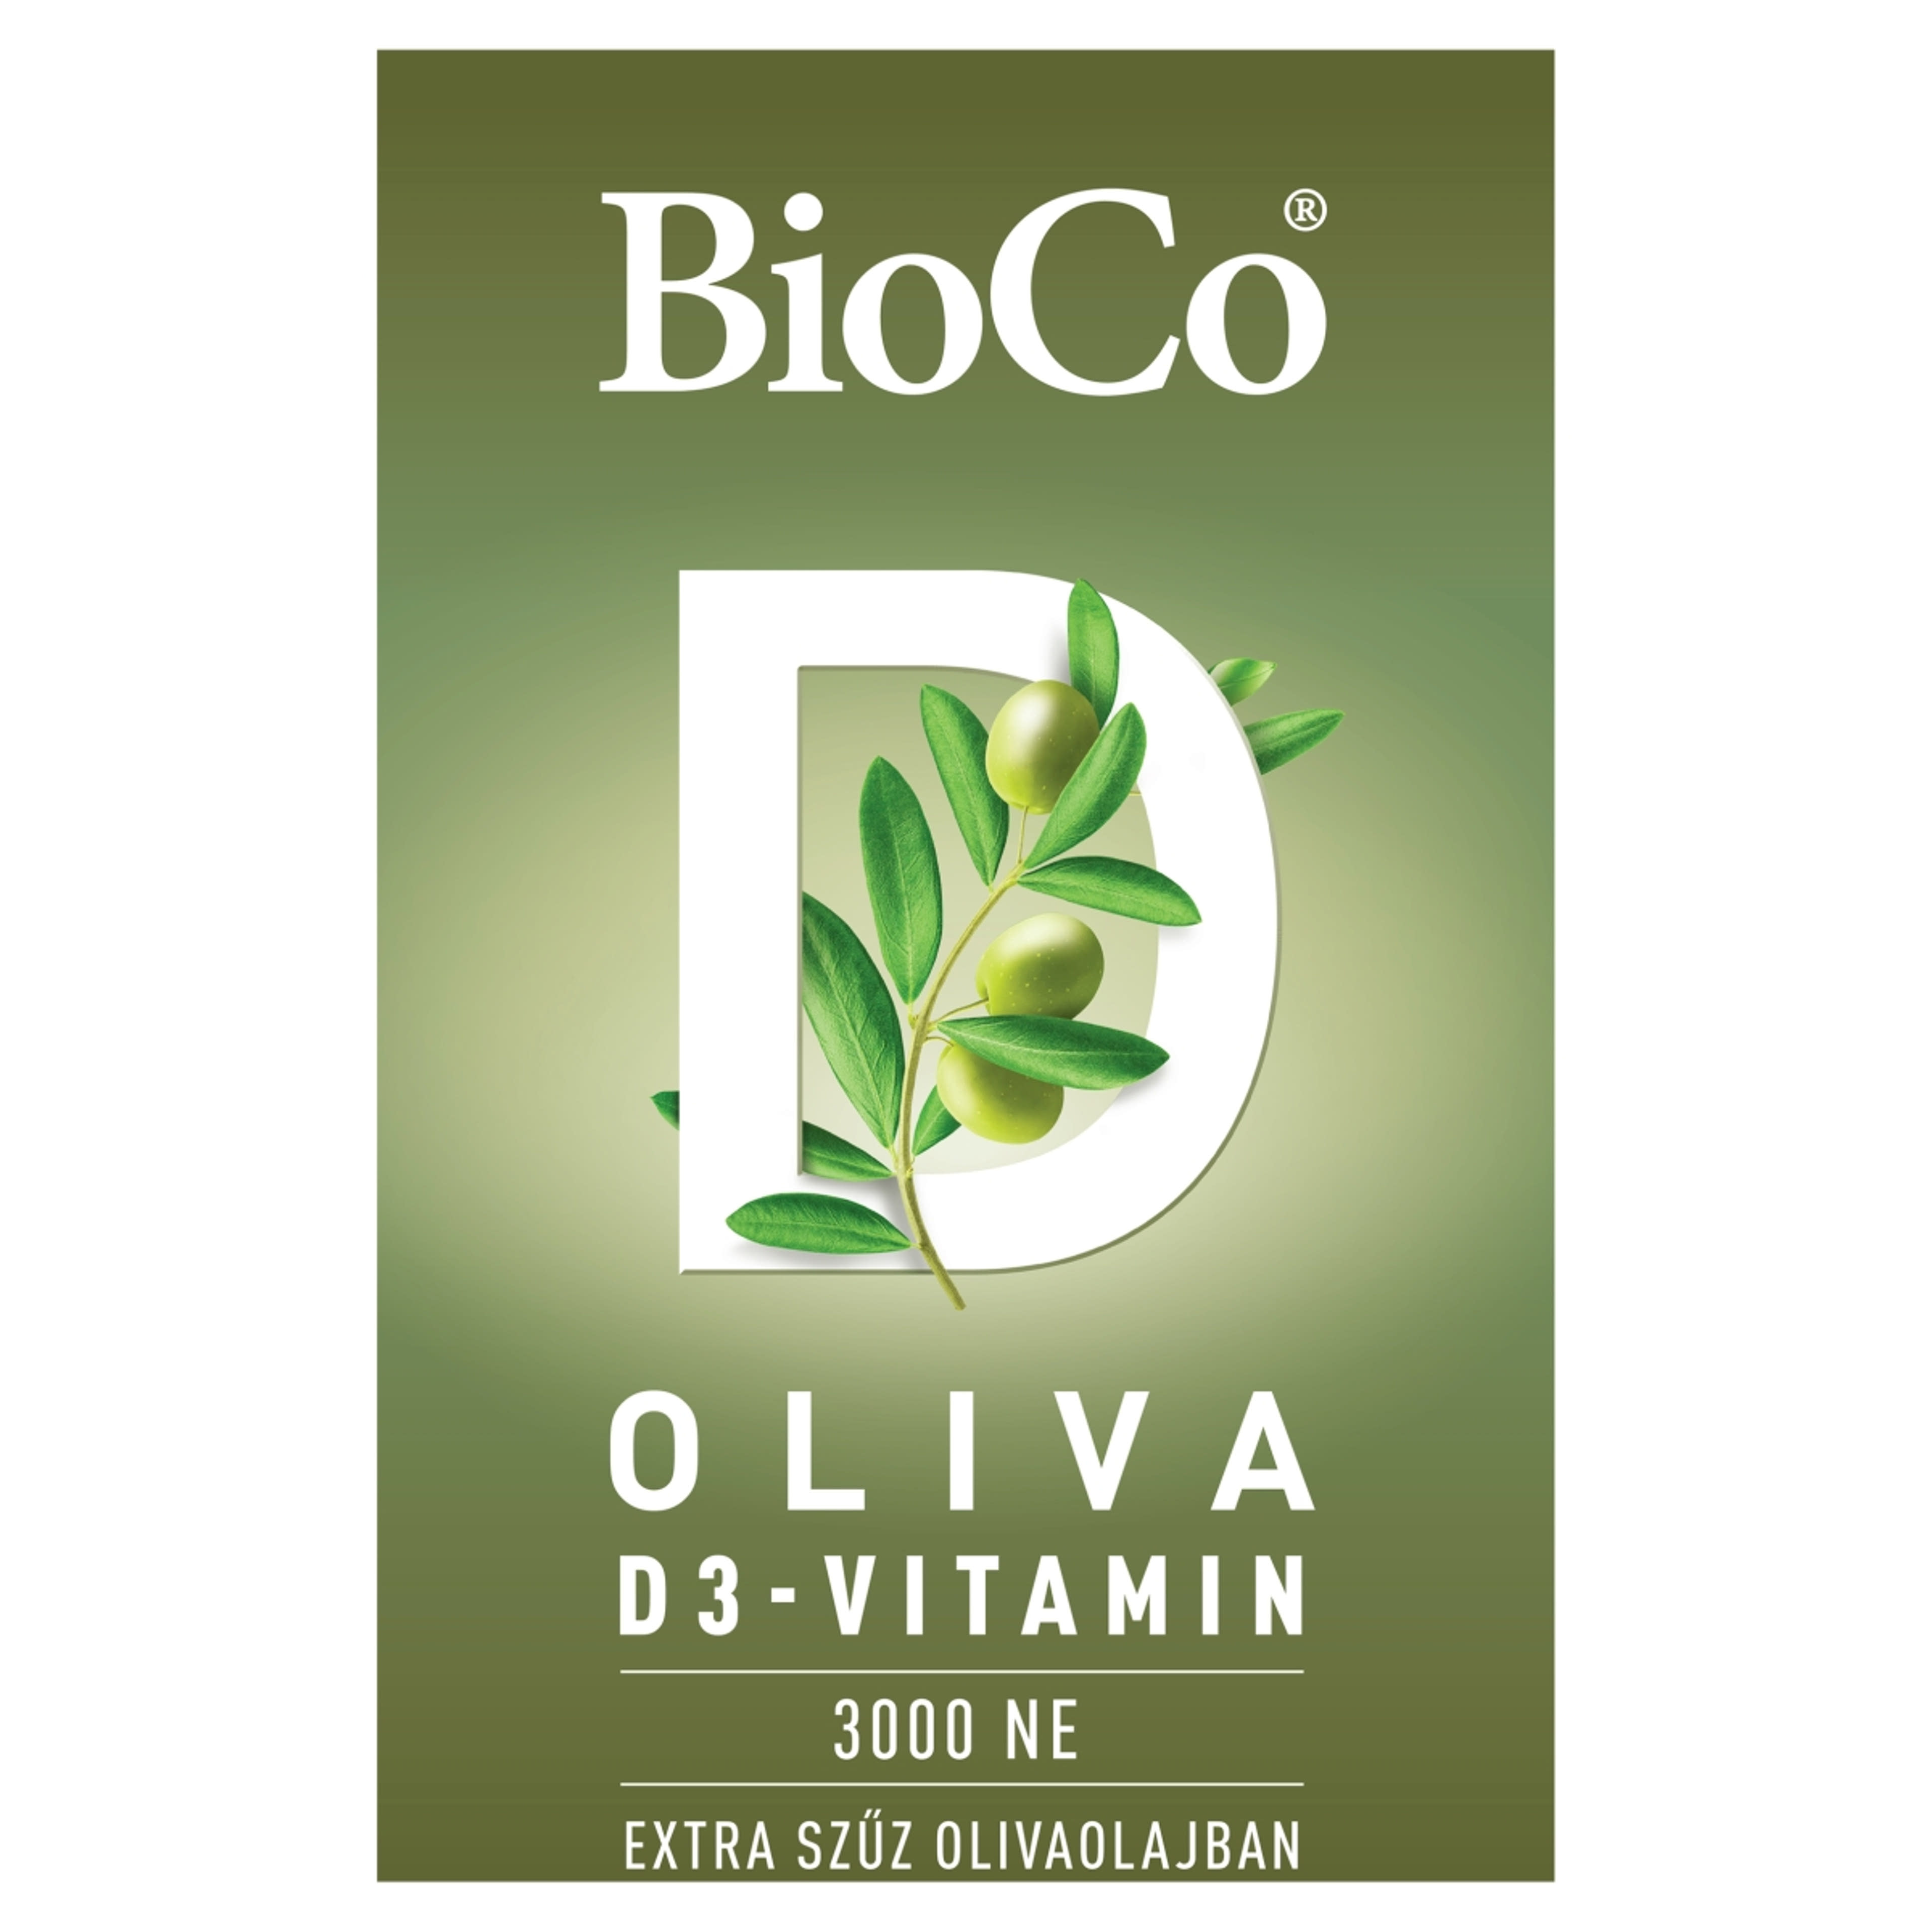 BioCo Oliva D3-vitamin 3000 NE étrend-kiegészítő lágyzselatin kapszula - 60 db